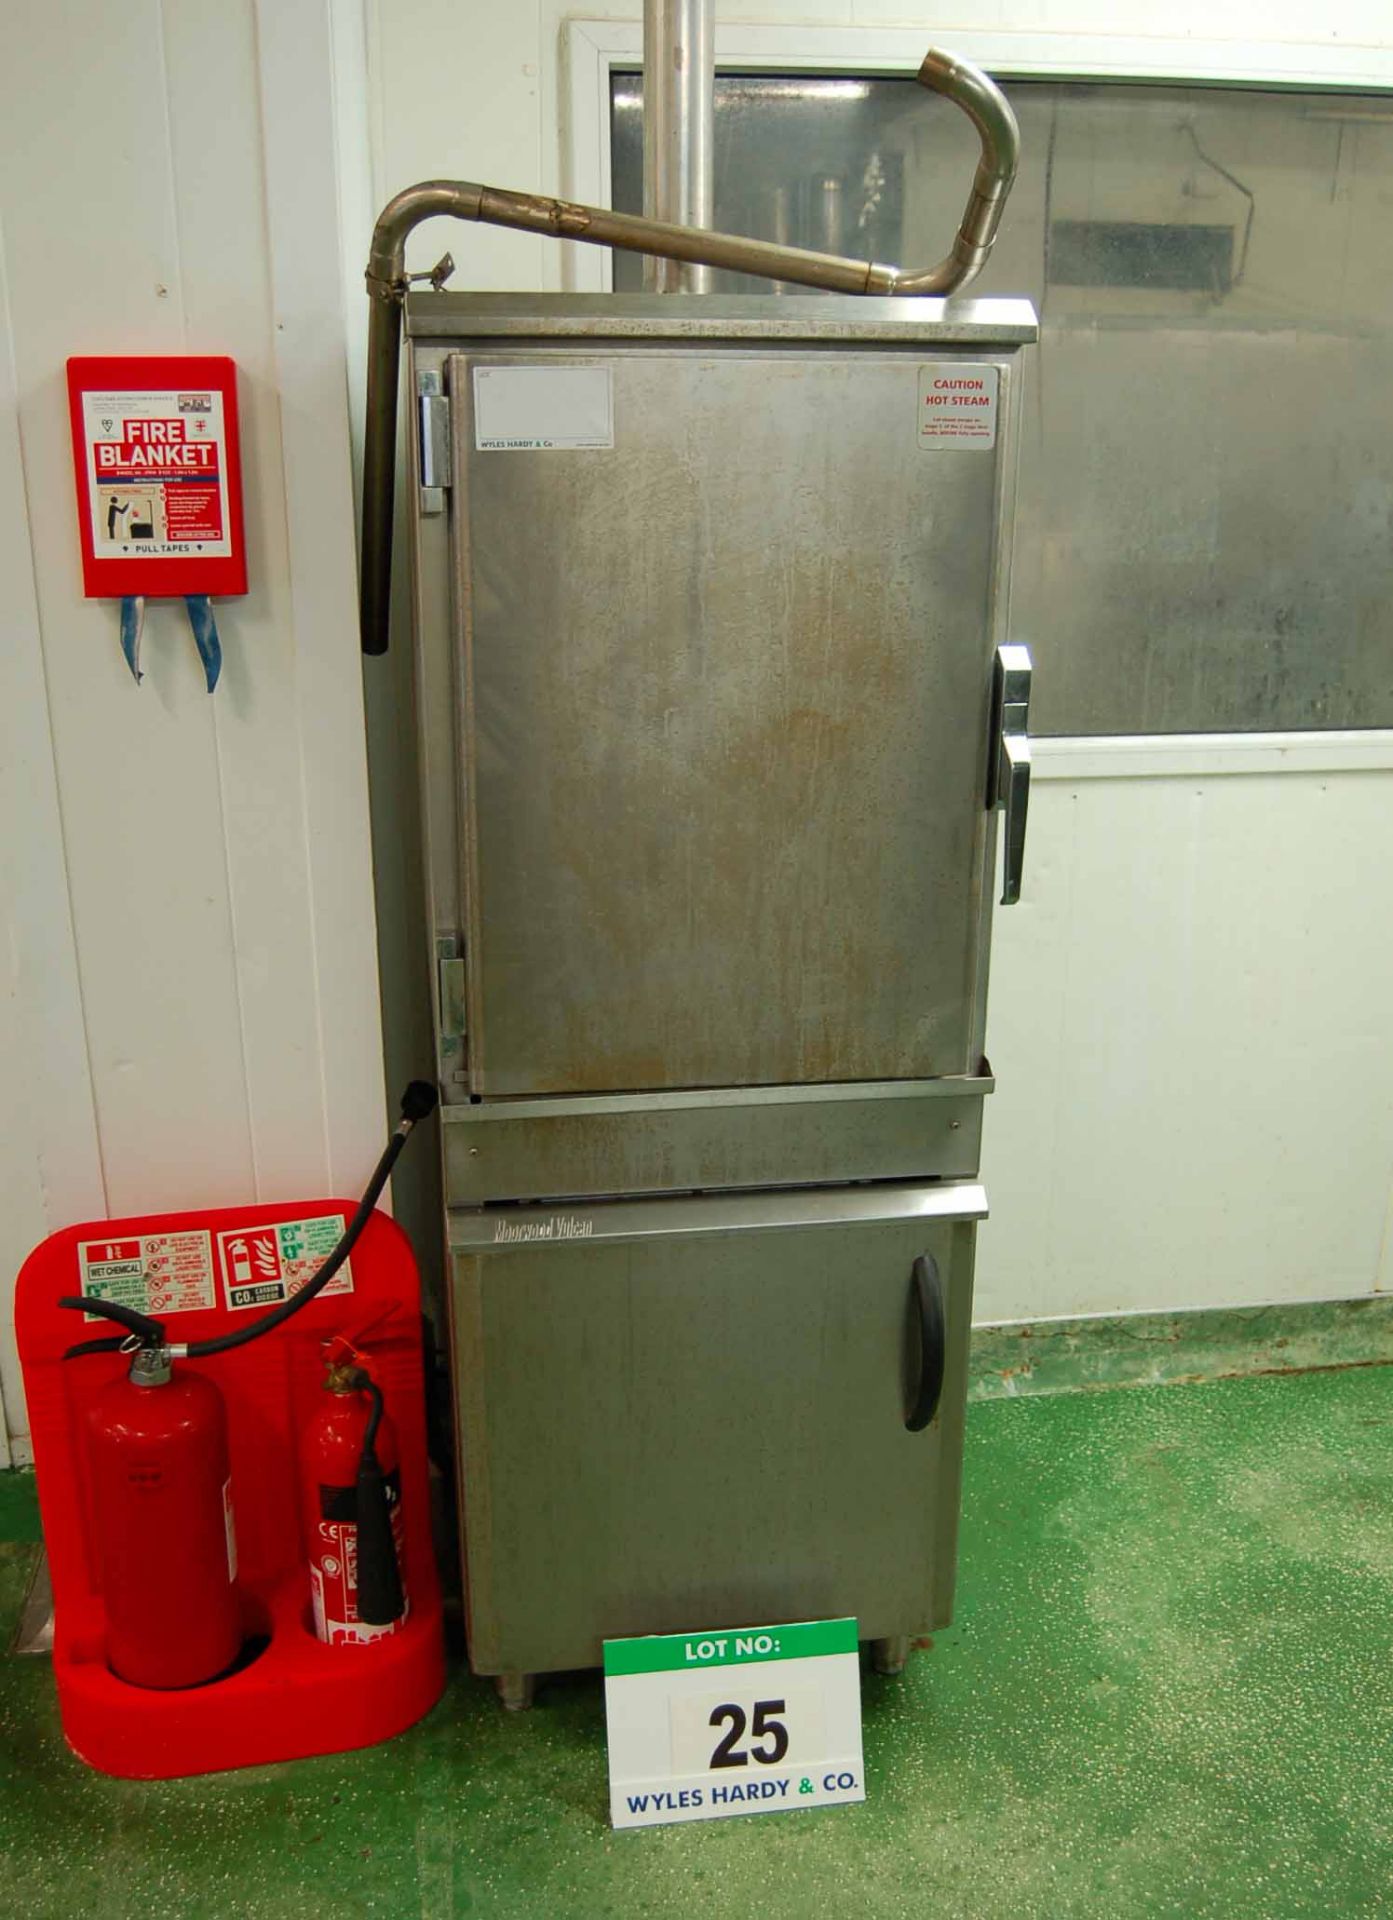 A MOORWOOD VULCAN MVISTA60-NG G20 Natural Gas Steam Oven, Serial No. 0709213000004, Internal